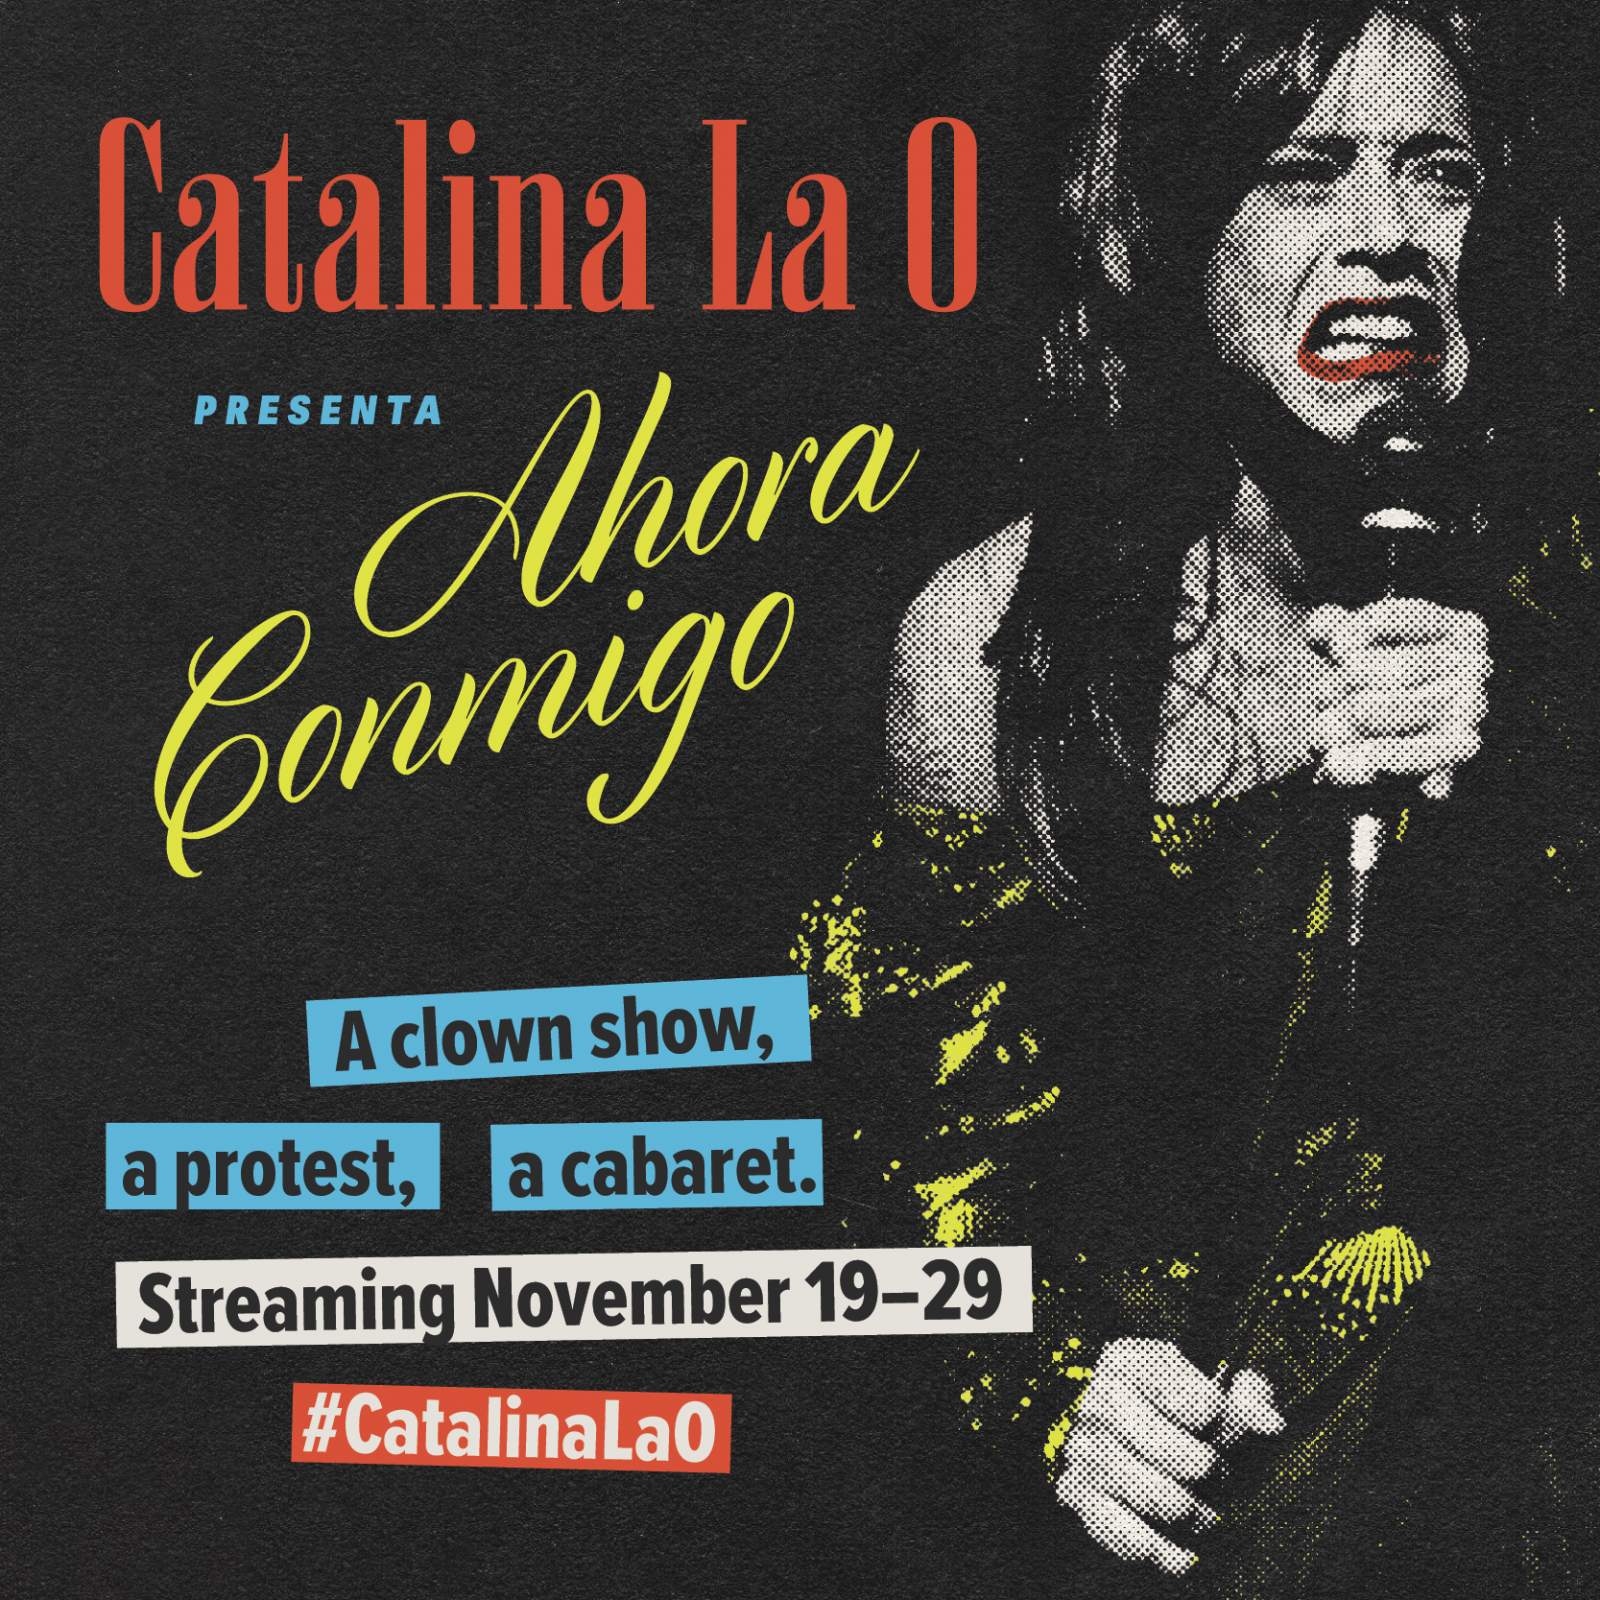 khattieQ singing poster for Catalina La O Presenta: Ahora Conmigo